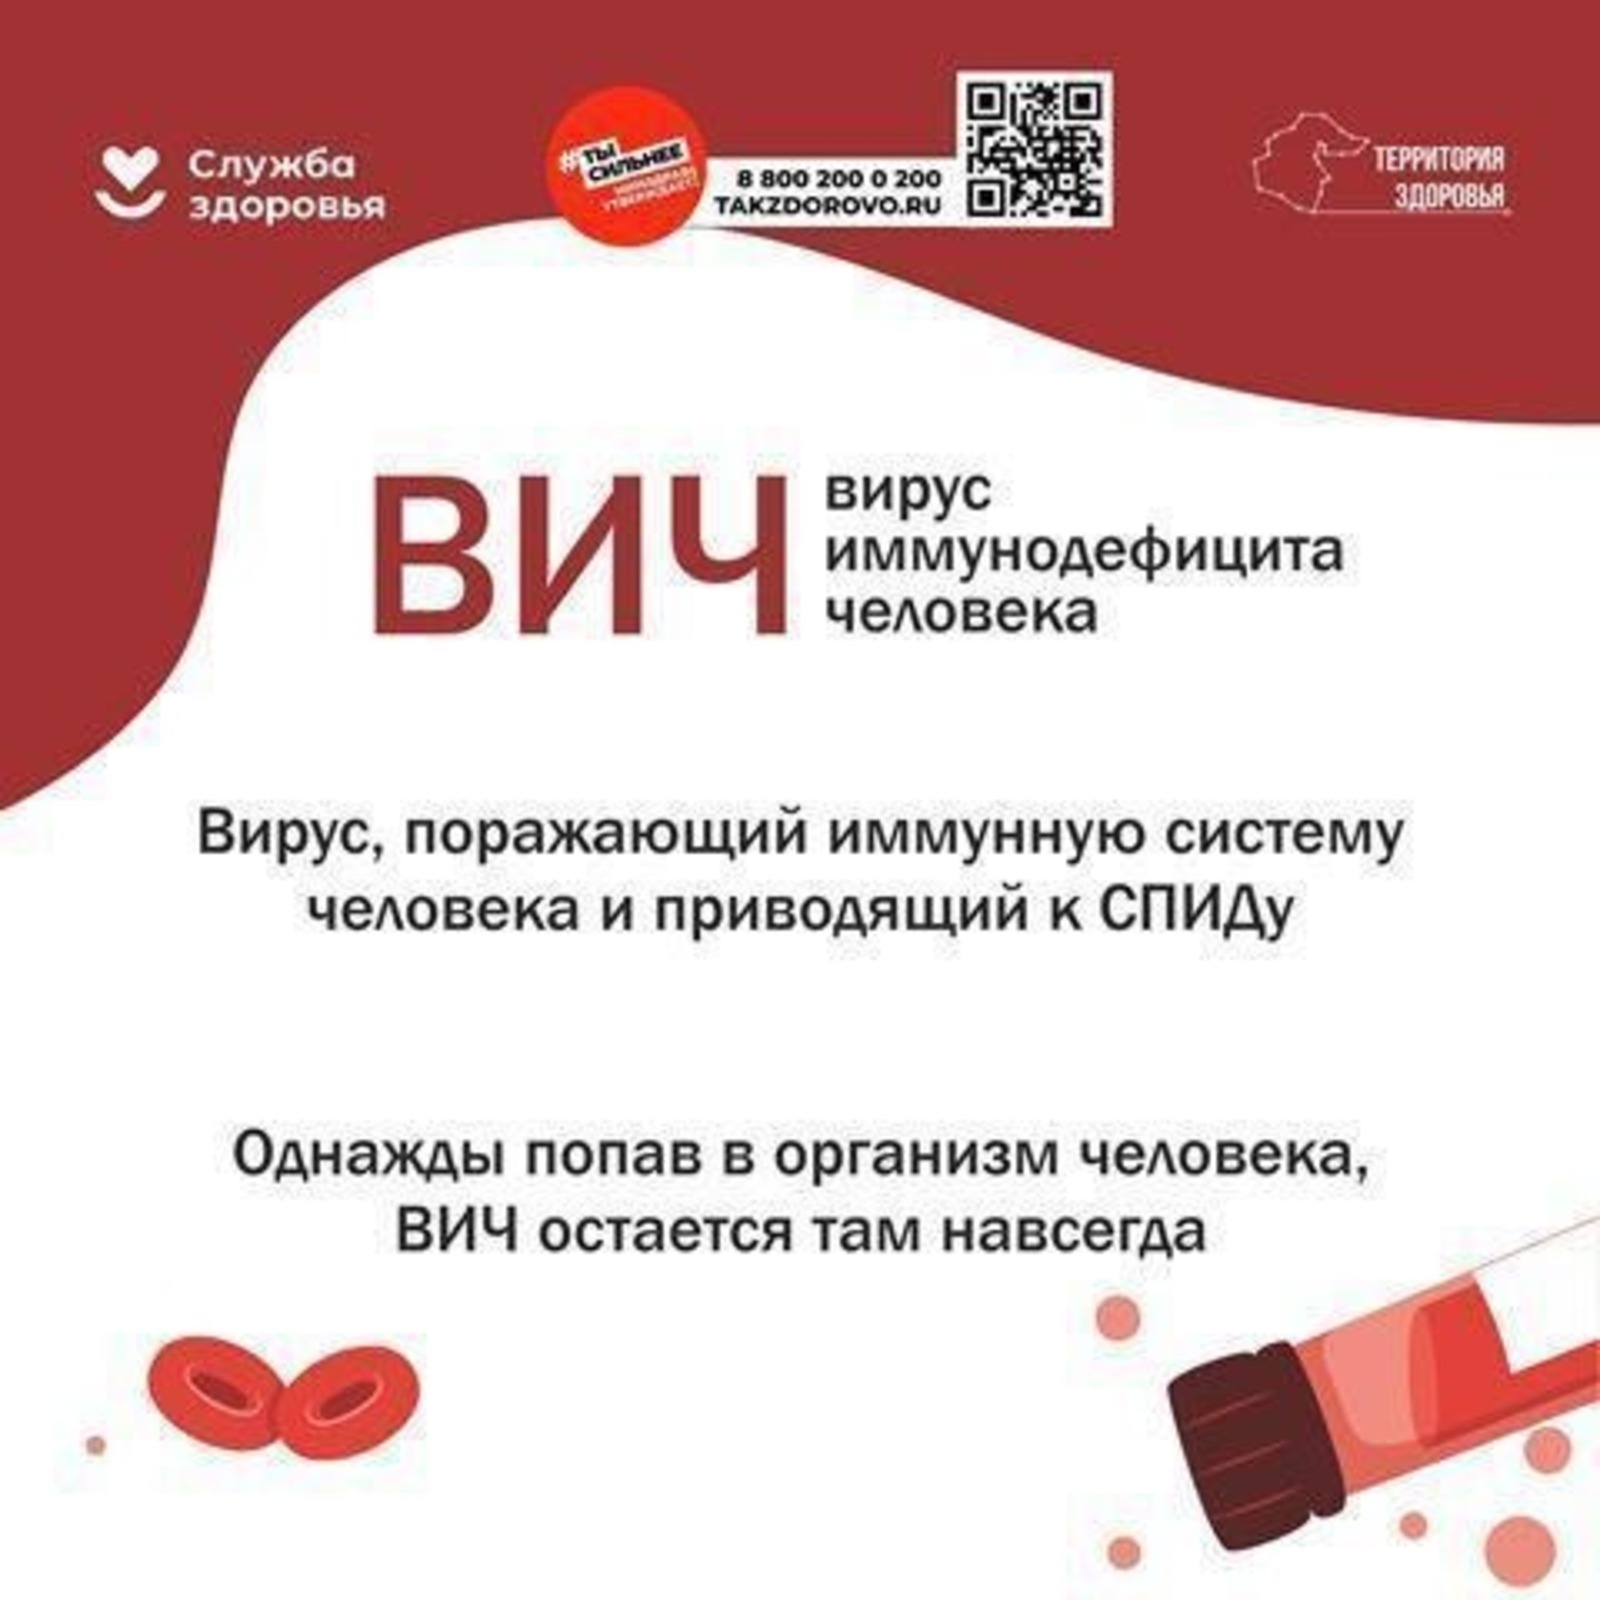 В Минздраве Башкирии создали памятки по профилактике ВИЧ